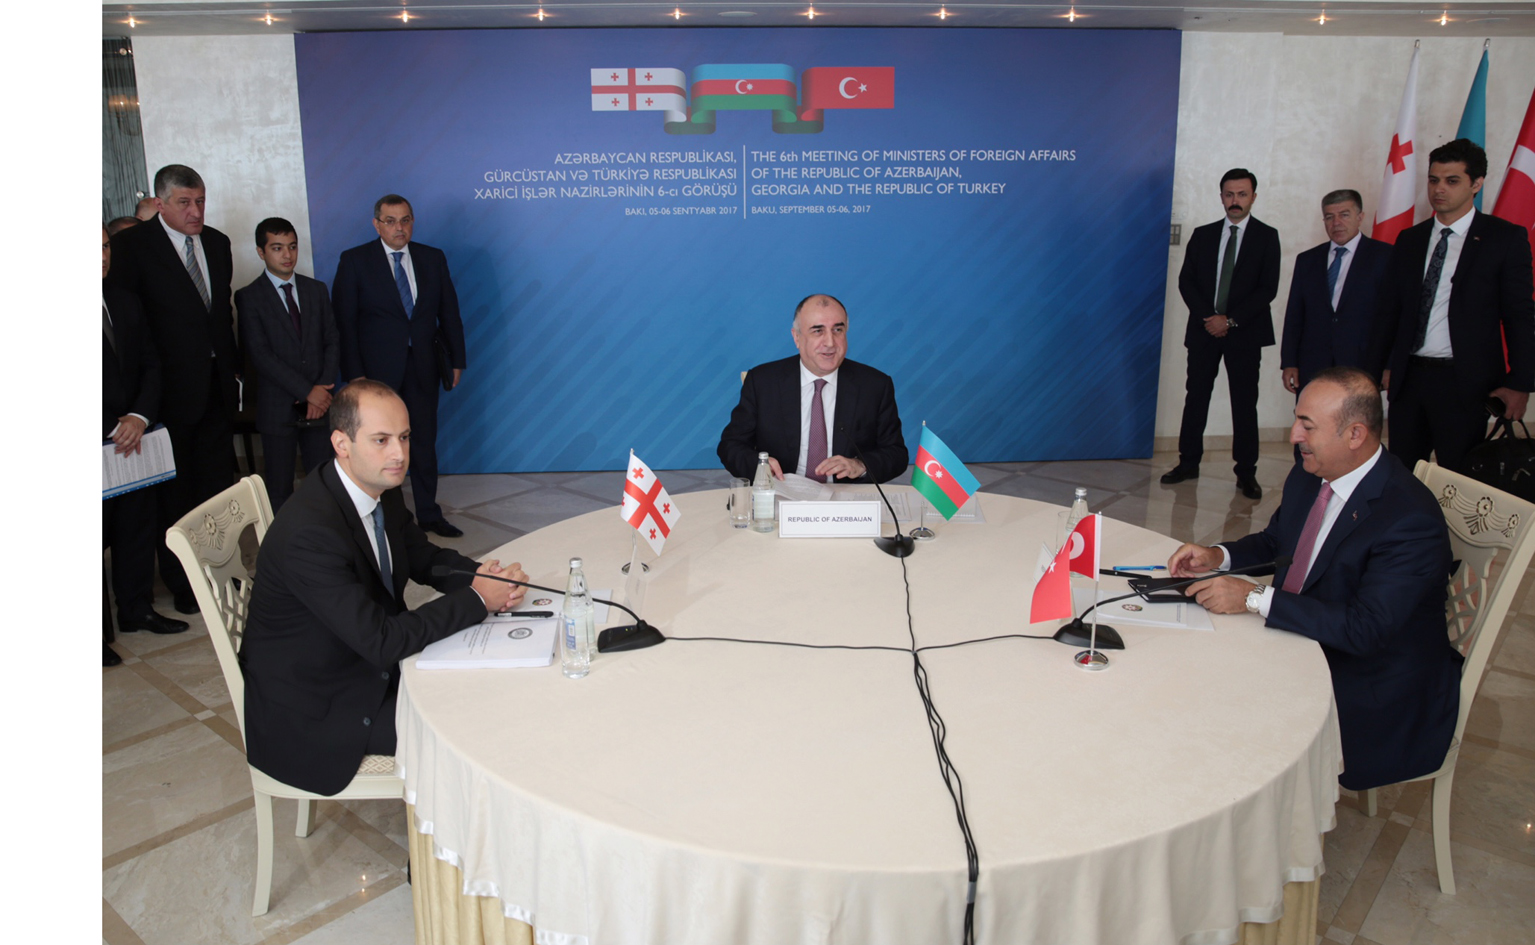 В Баку состоялась VI трехсторонняя встреча министров иностранных дел Азербайджана, Грузии и Турции